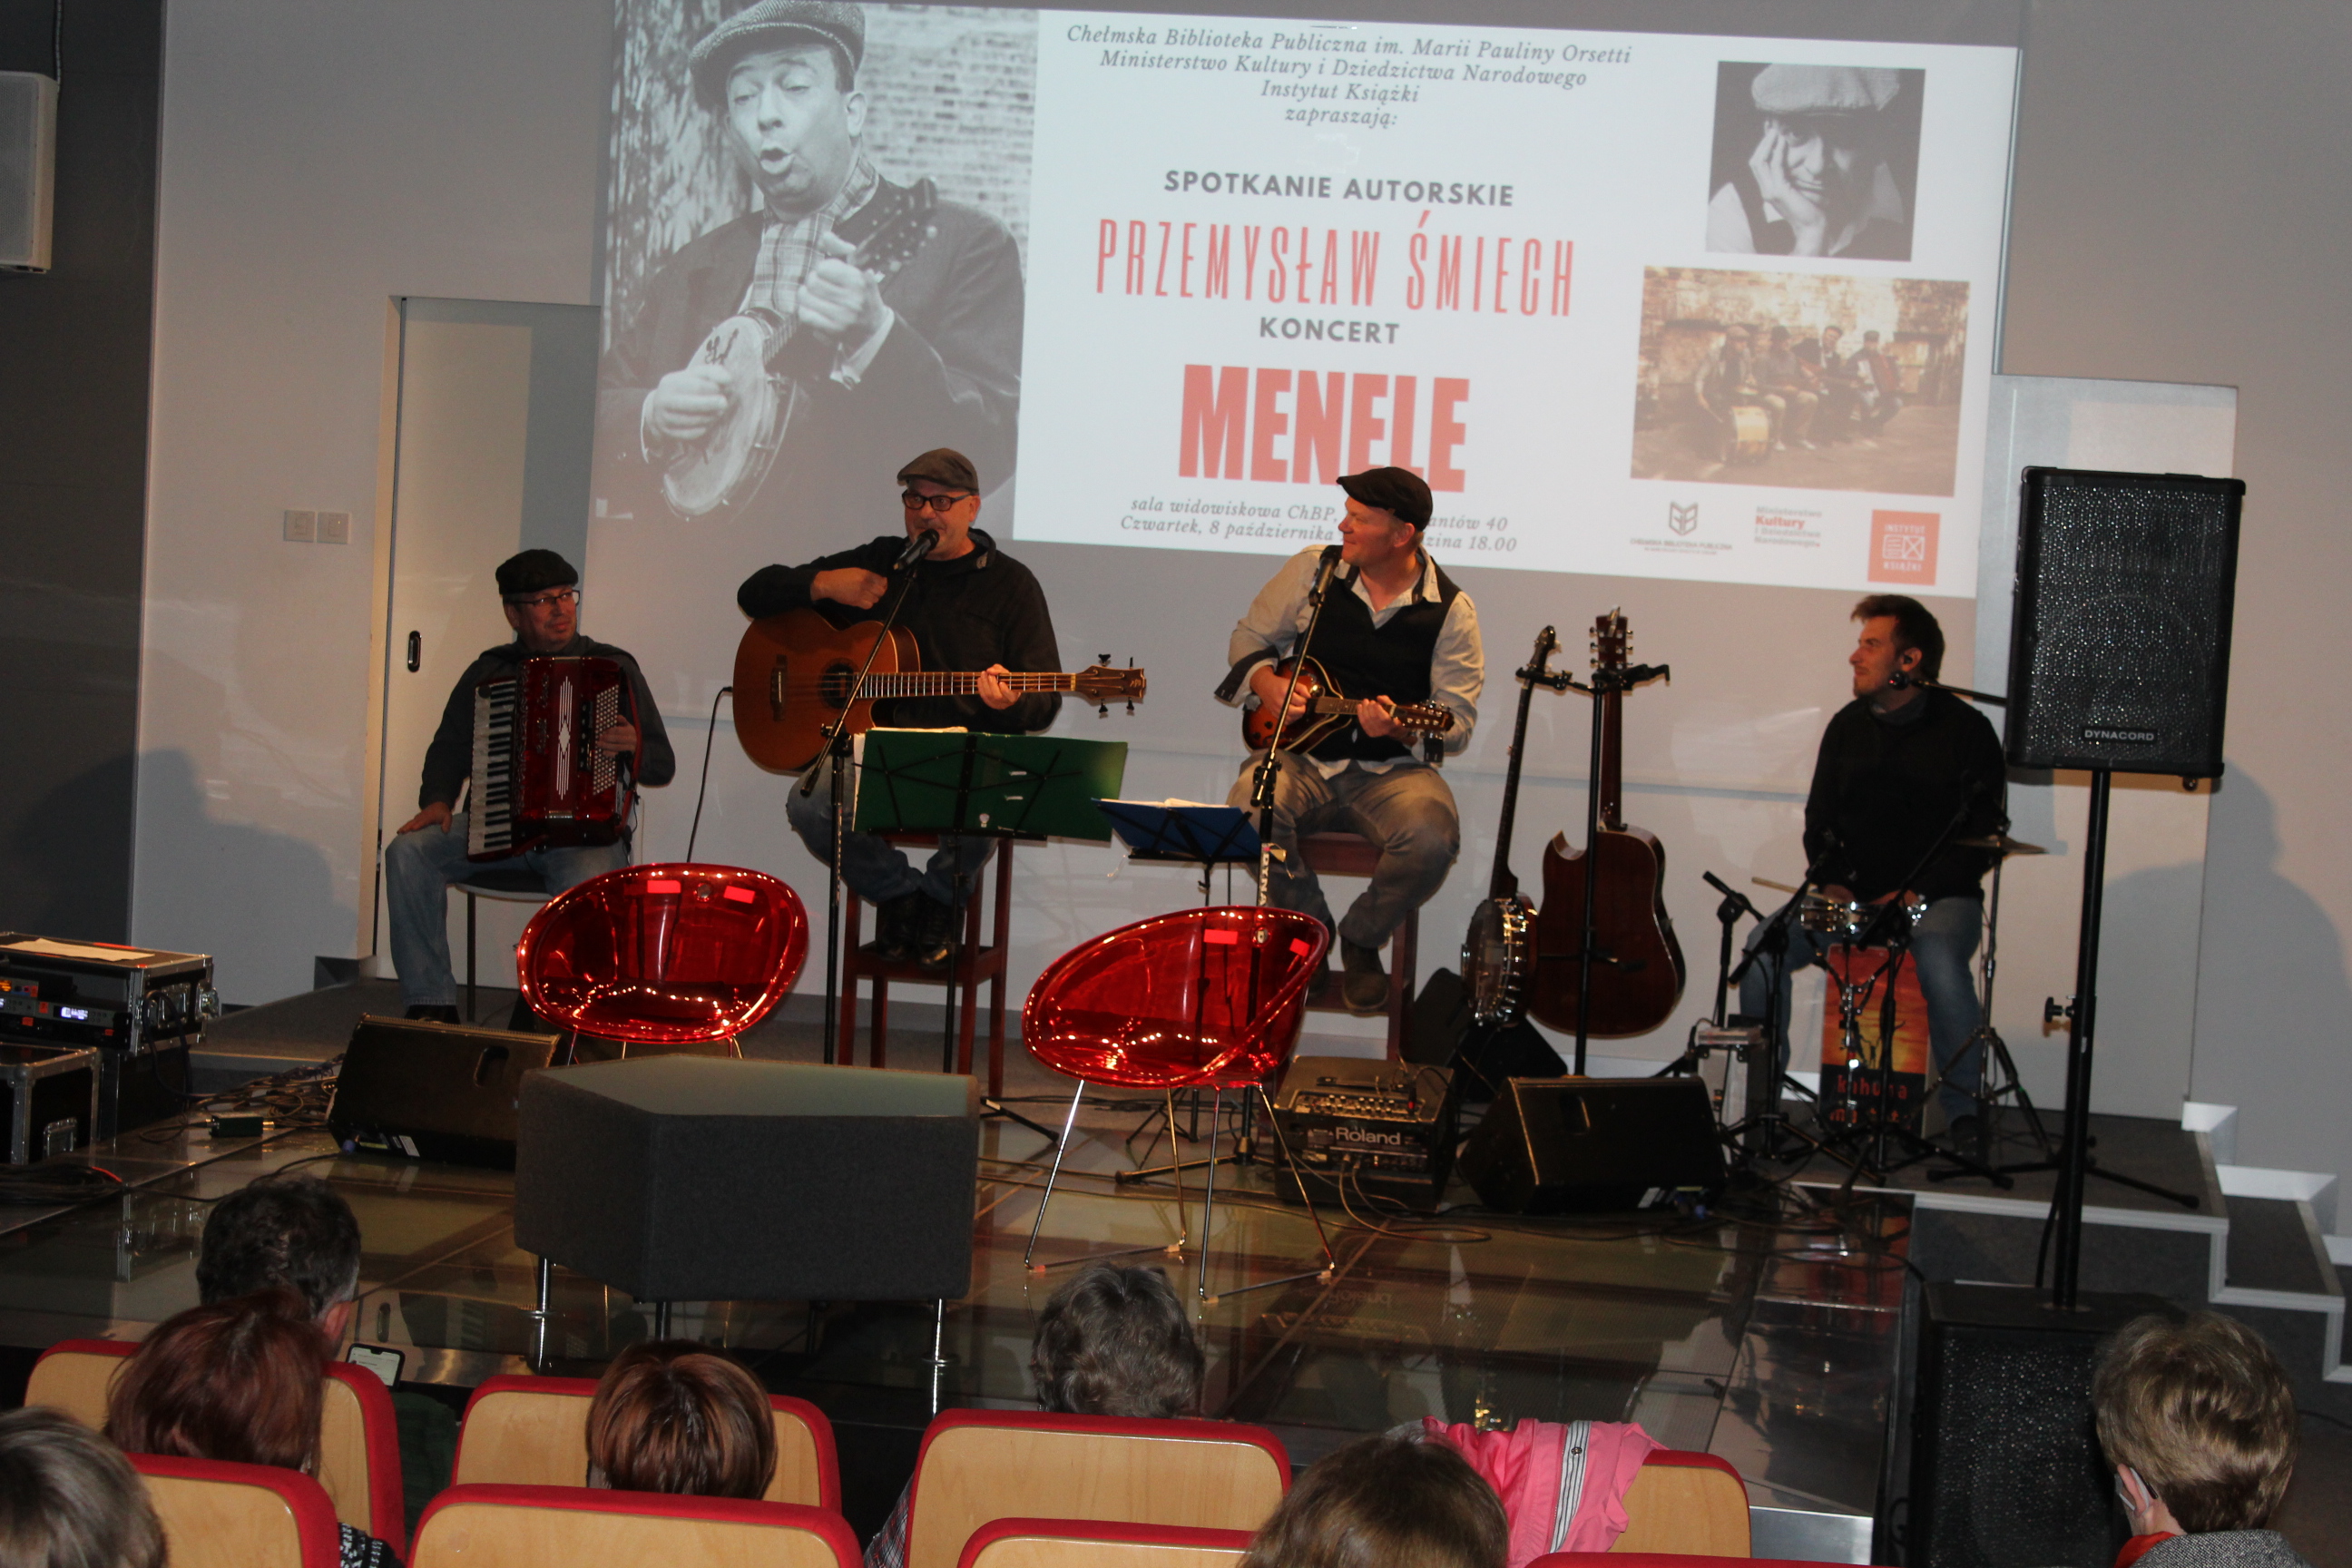 Członkowie zespołu Menele, czterech mężczyzn, na scenie z instrumentami.